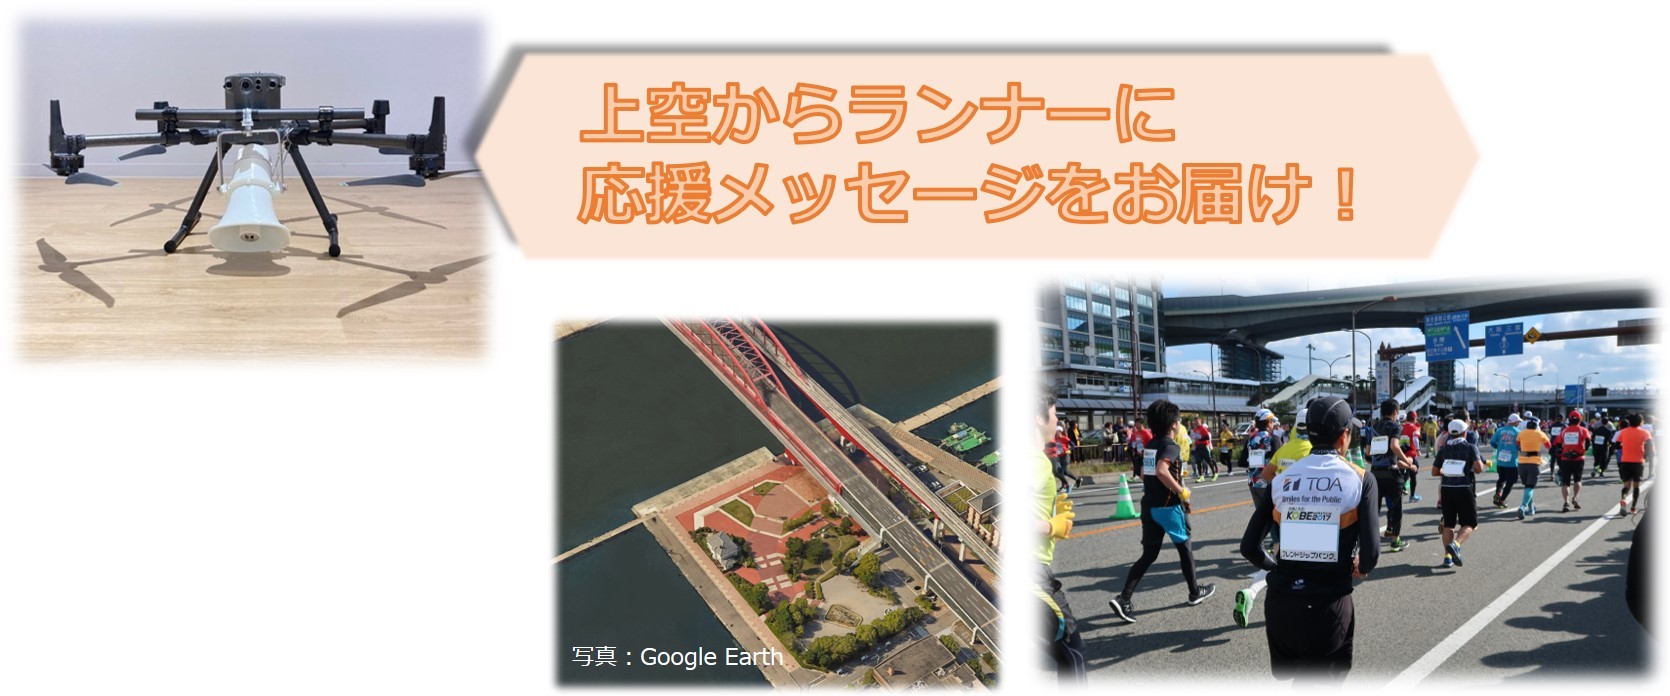 「第10回神戸マラソン」ドローンで
上空から応援メッセージをお届け　
マラソンイベントでは全国初！